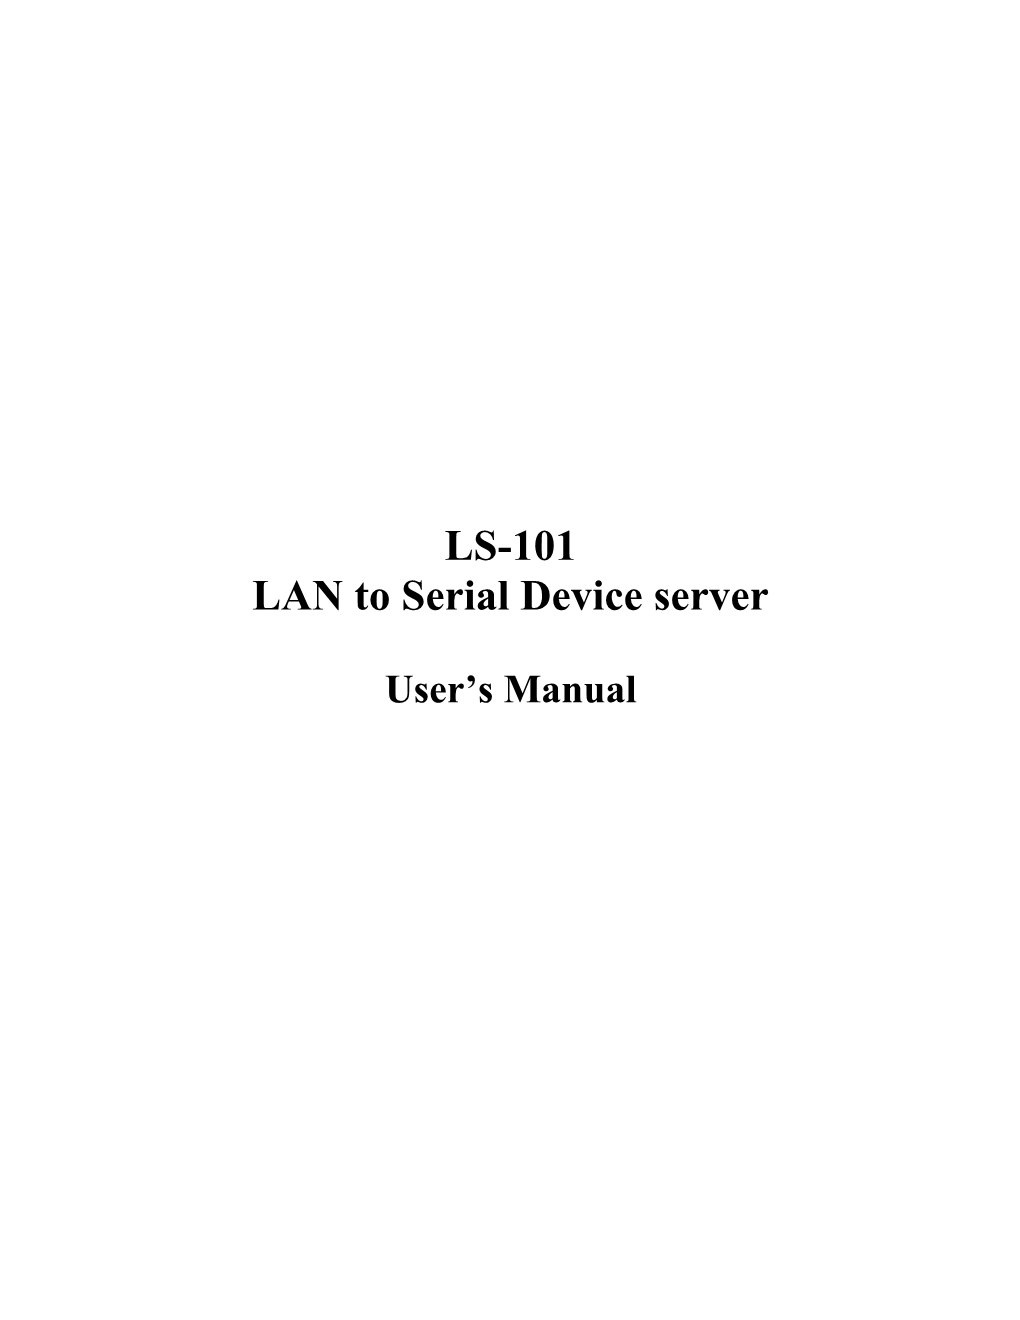 LAN to Serial Device Server